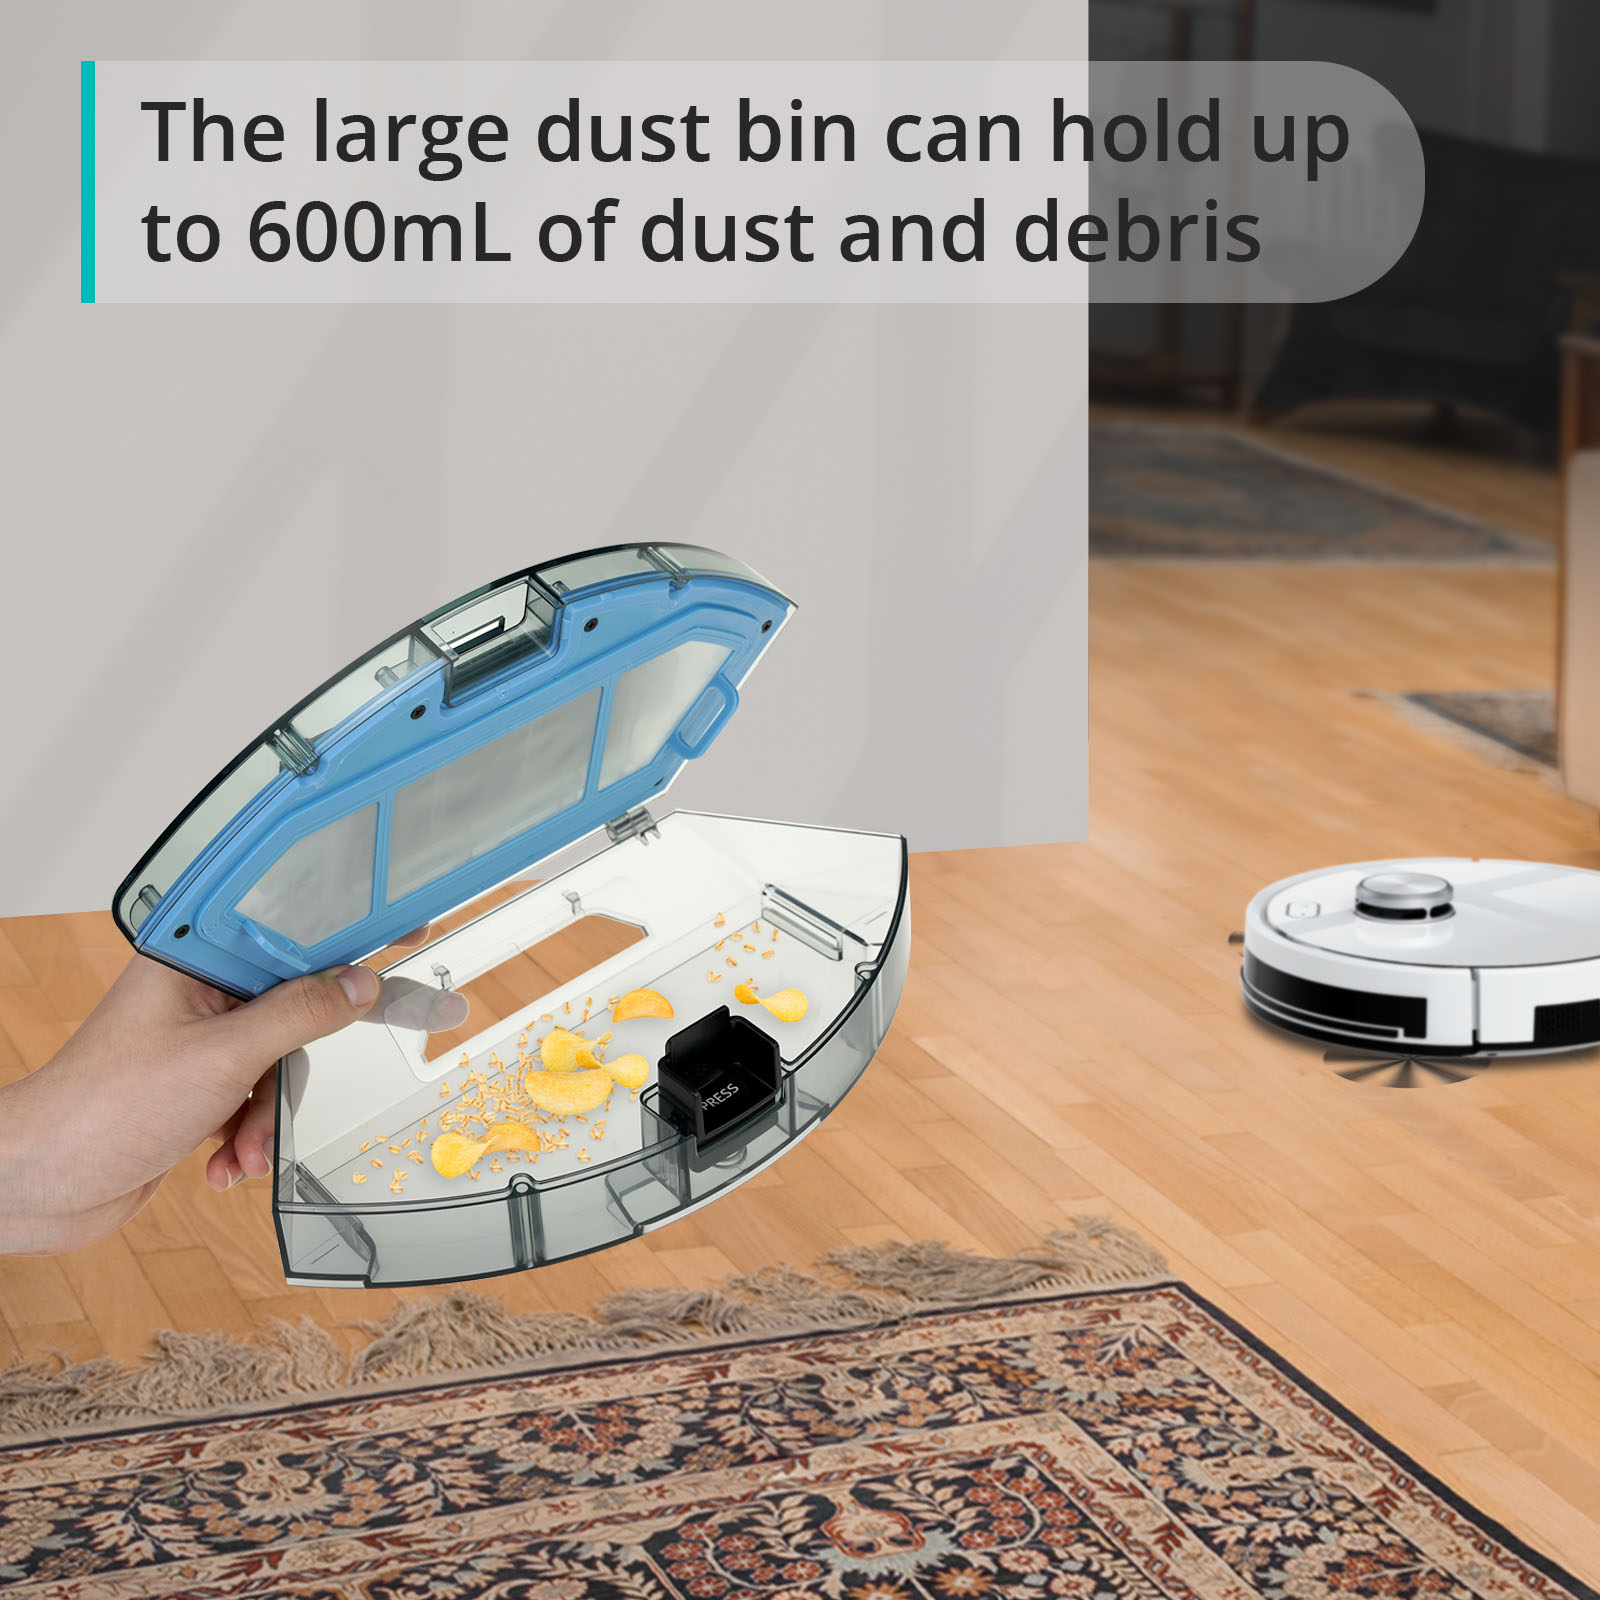 Large dust bin 600ml